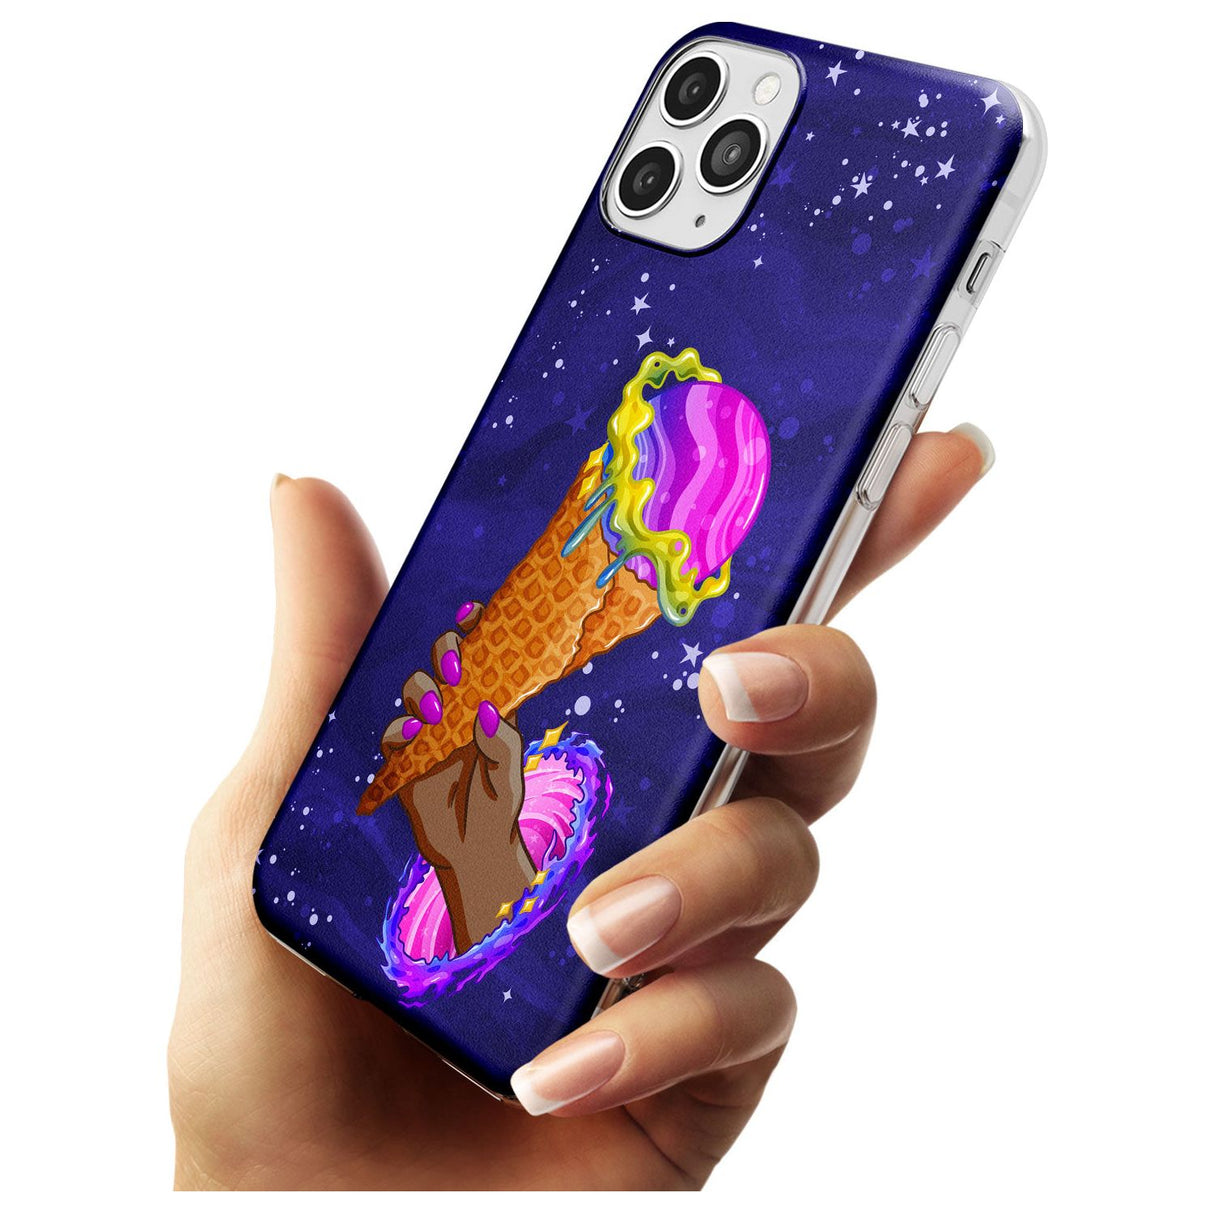 Interdimensional Ice Cream Slim TPU Phone Case for iPhone 11 Pro Max